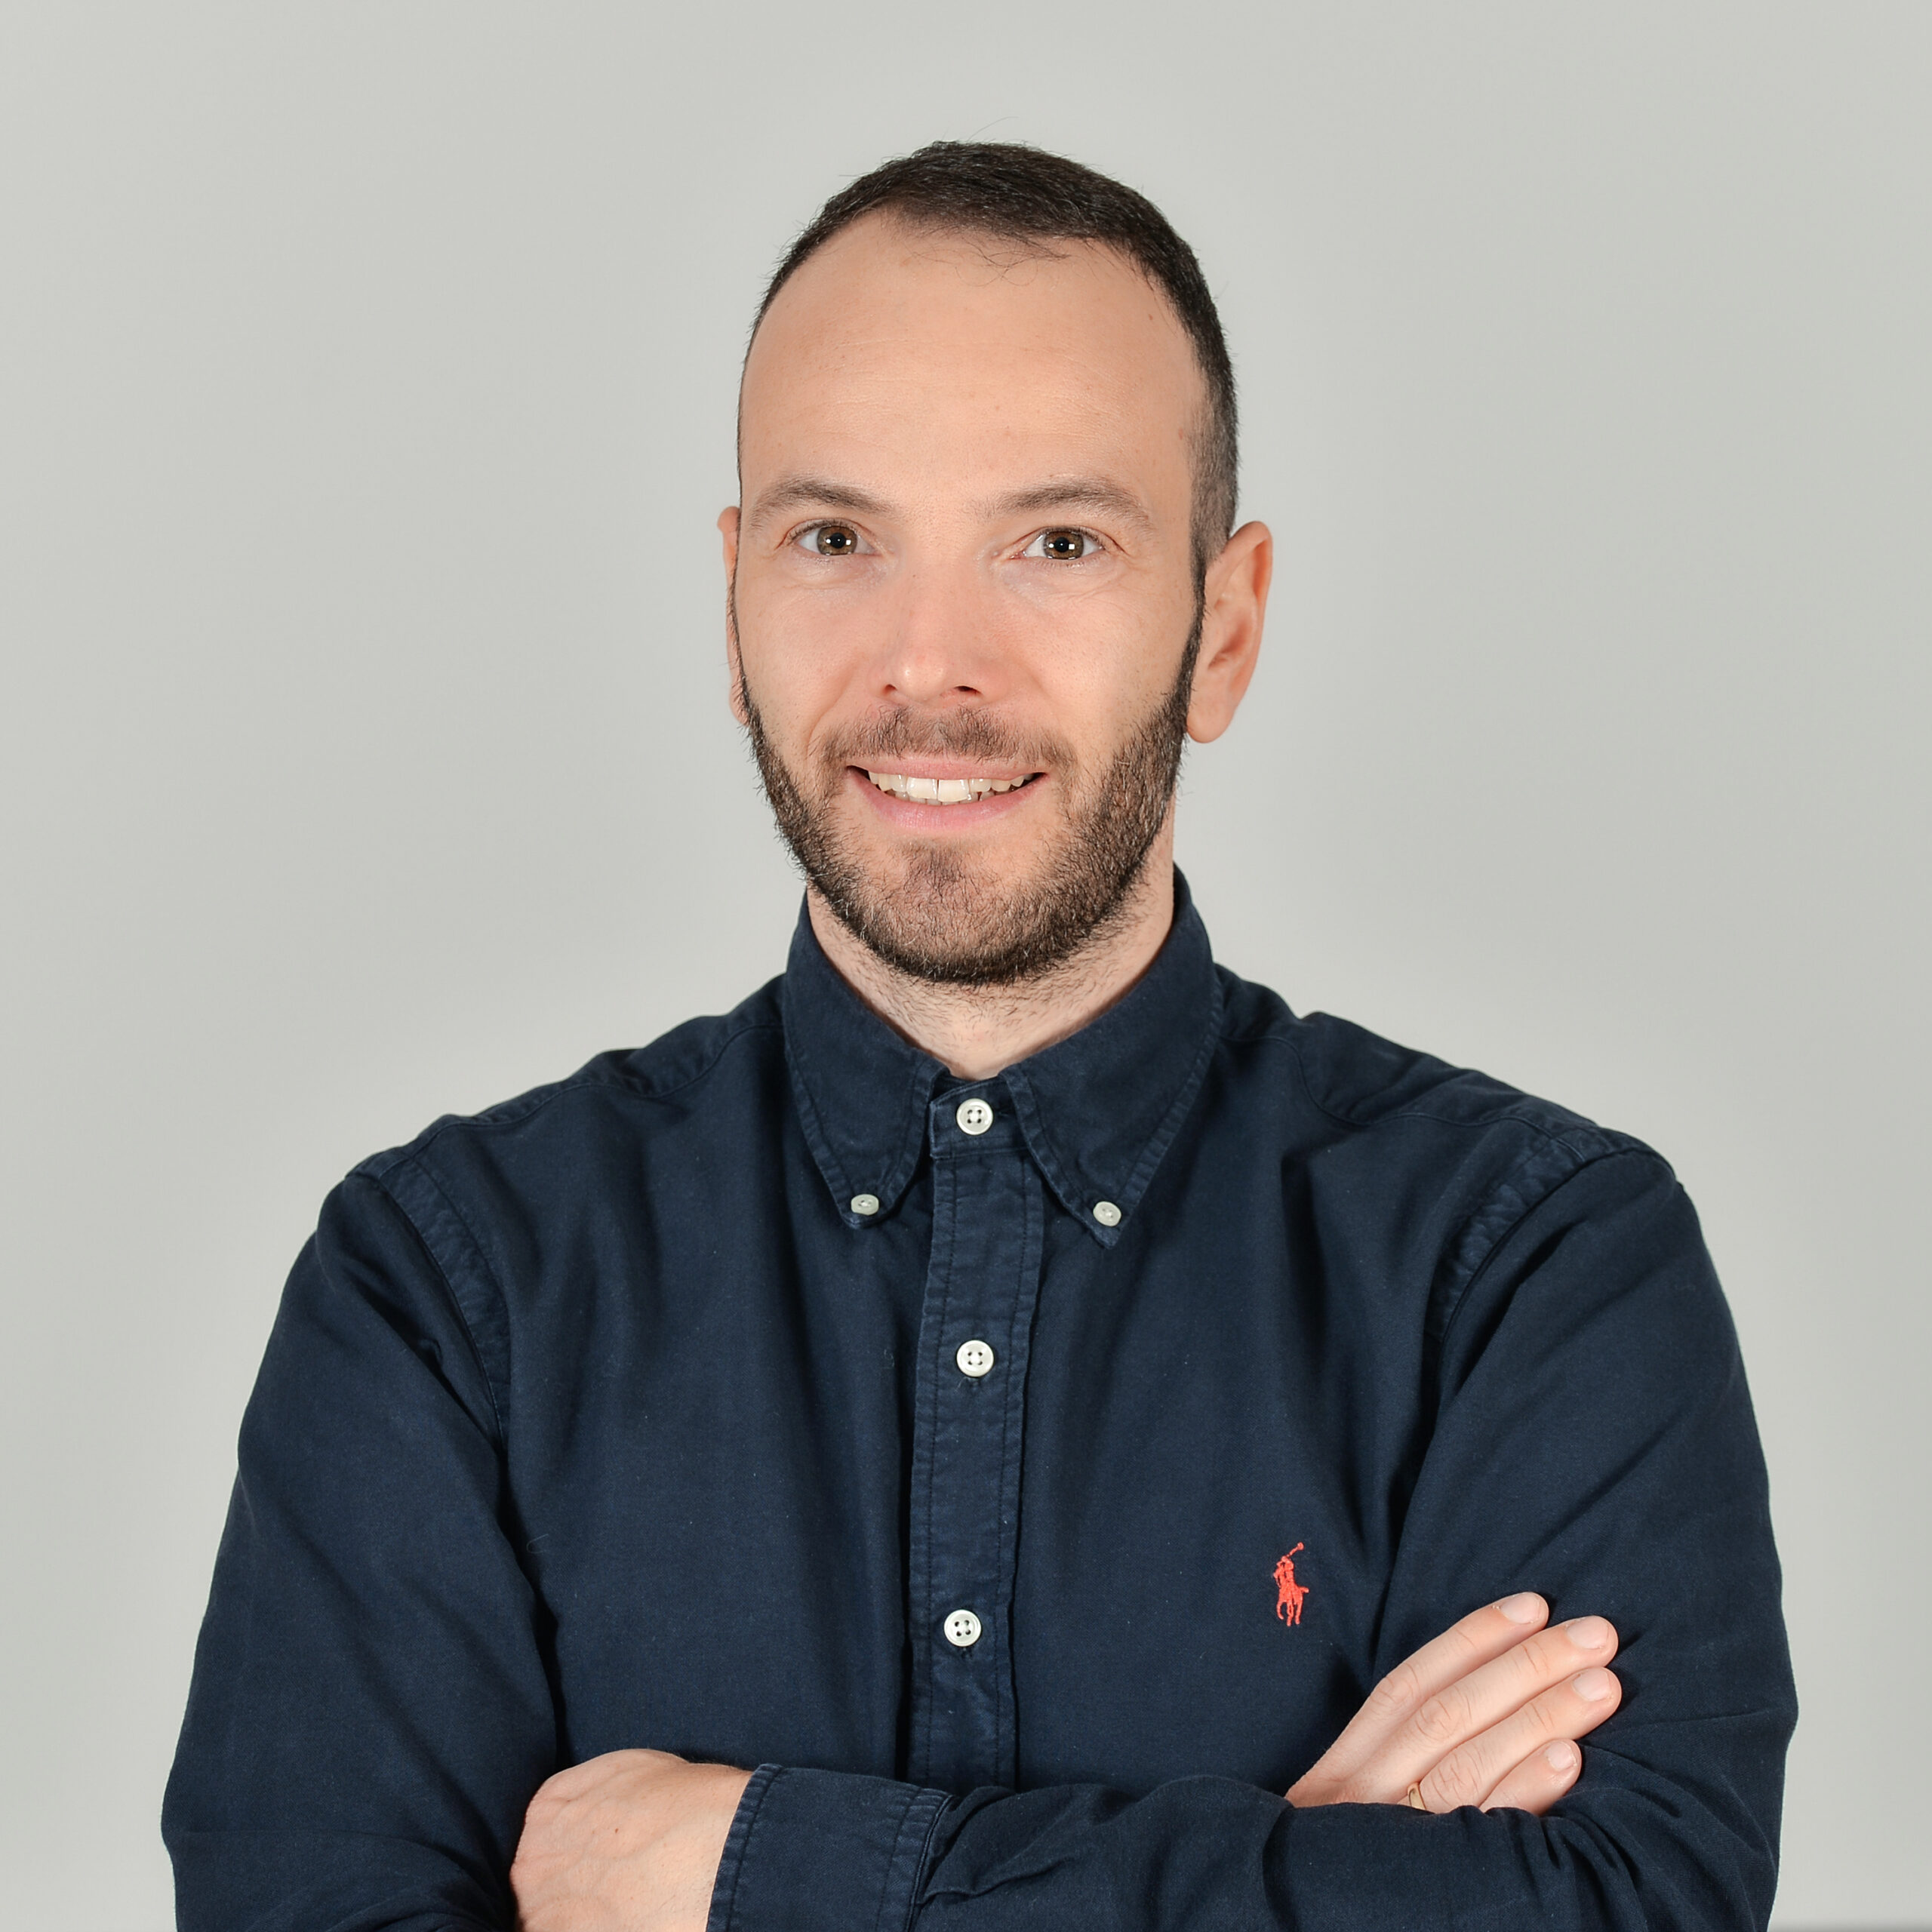 Profilbild von Fabian Alexander Emde in einem dunkel-blauen Hemd.